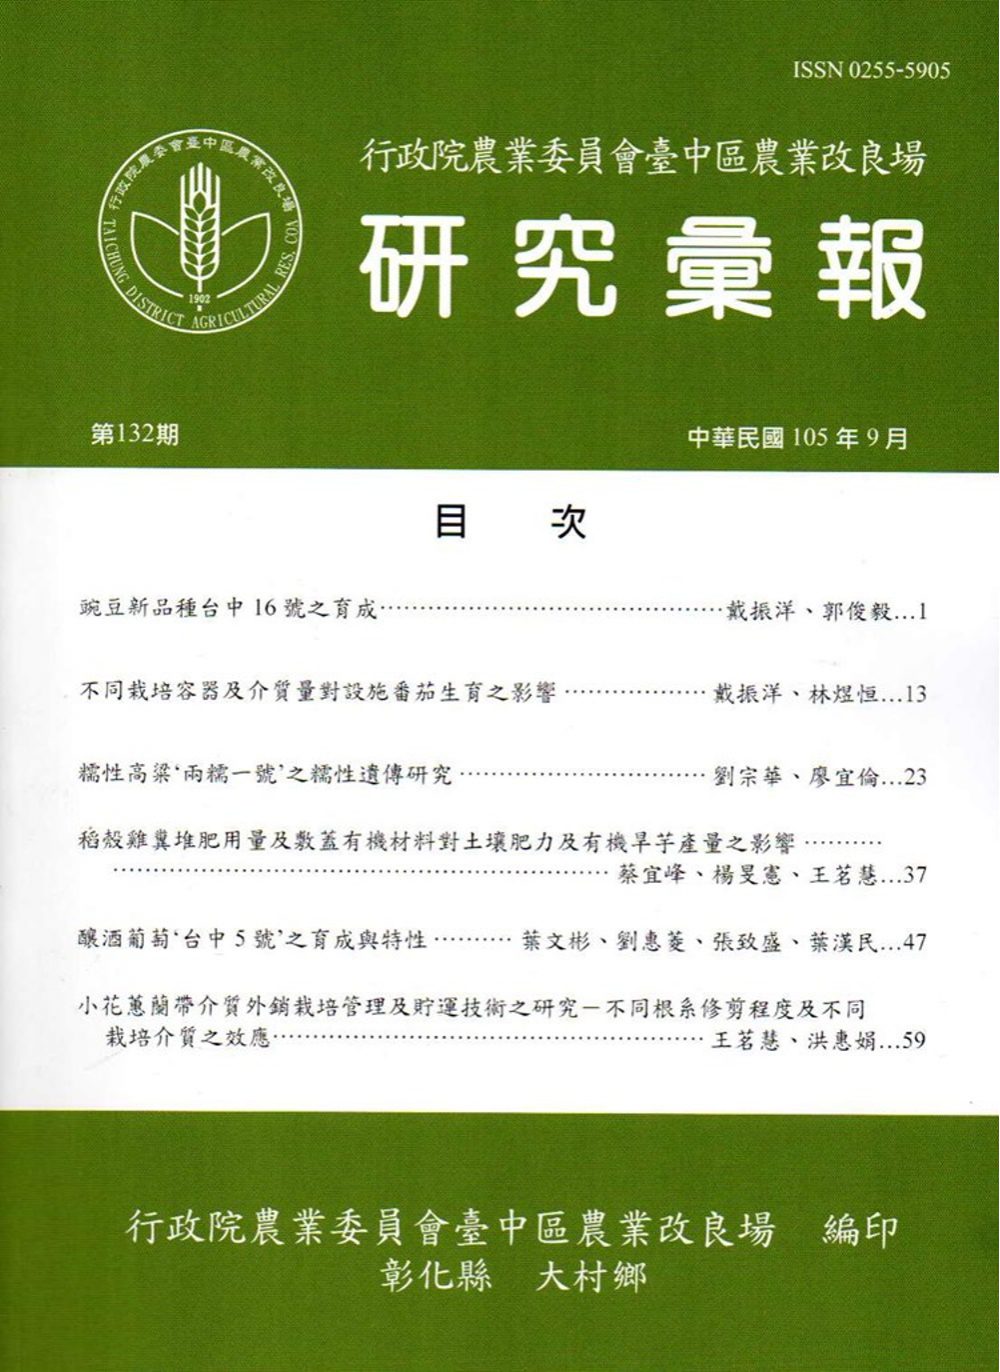 研究彙報132期(105/09)-行政院農業委員會臺中區農業改良場